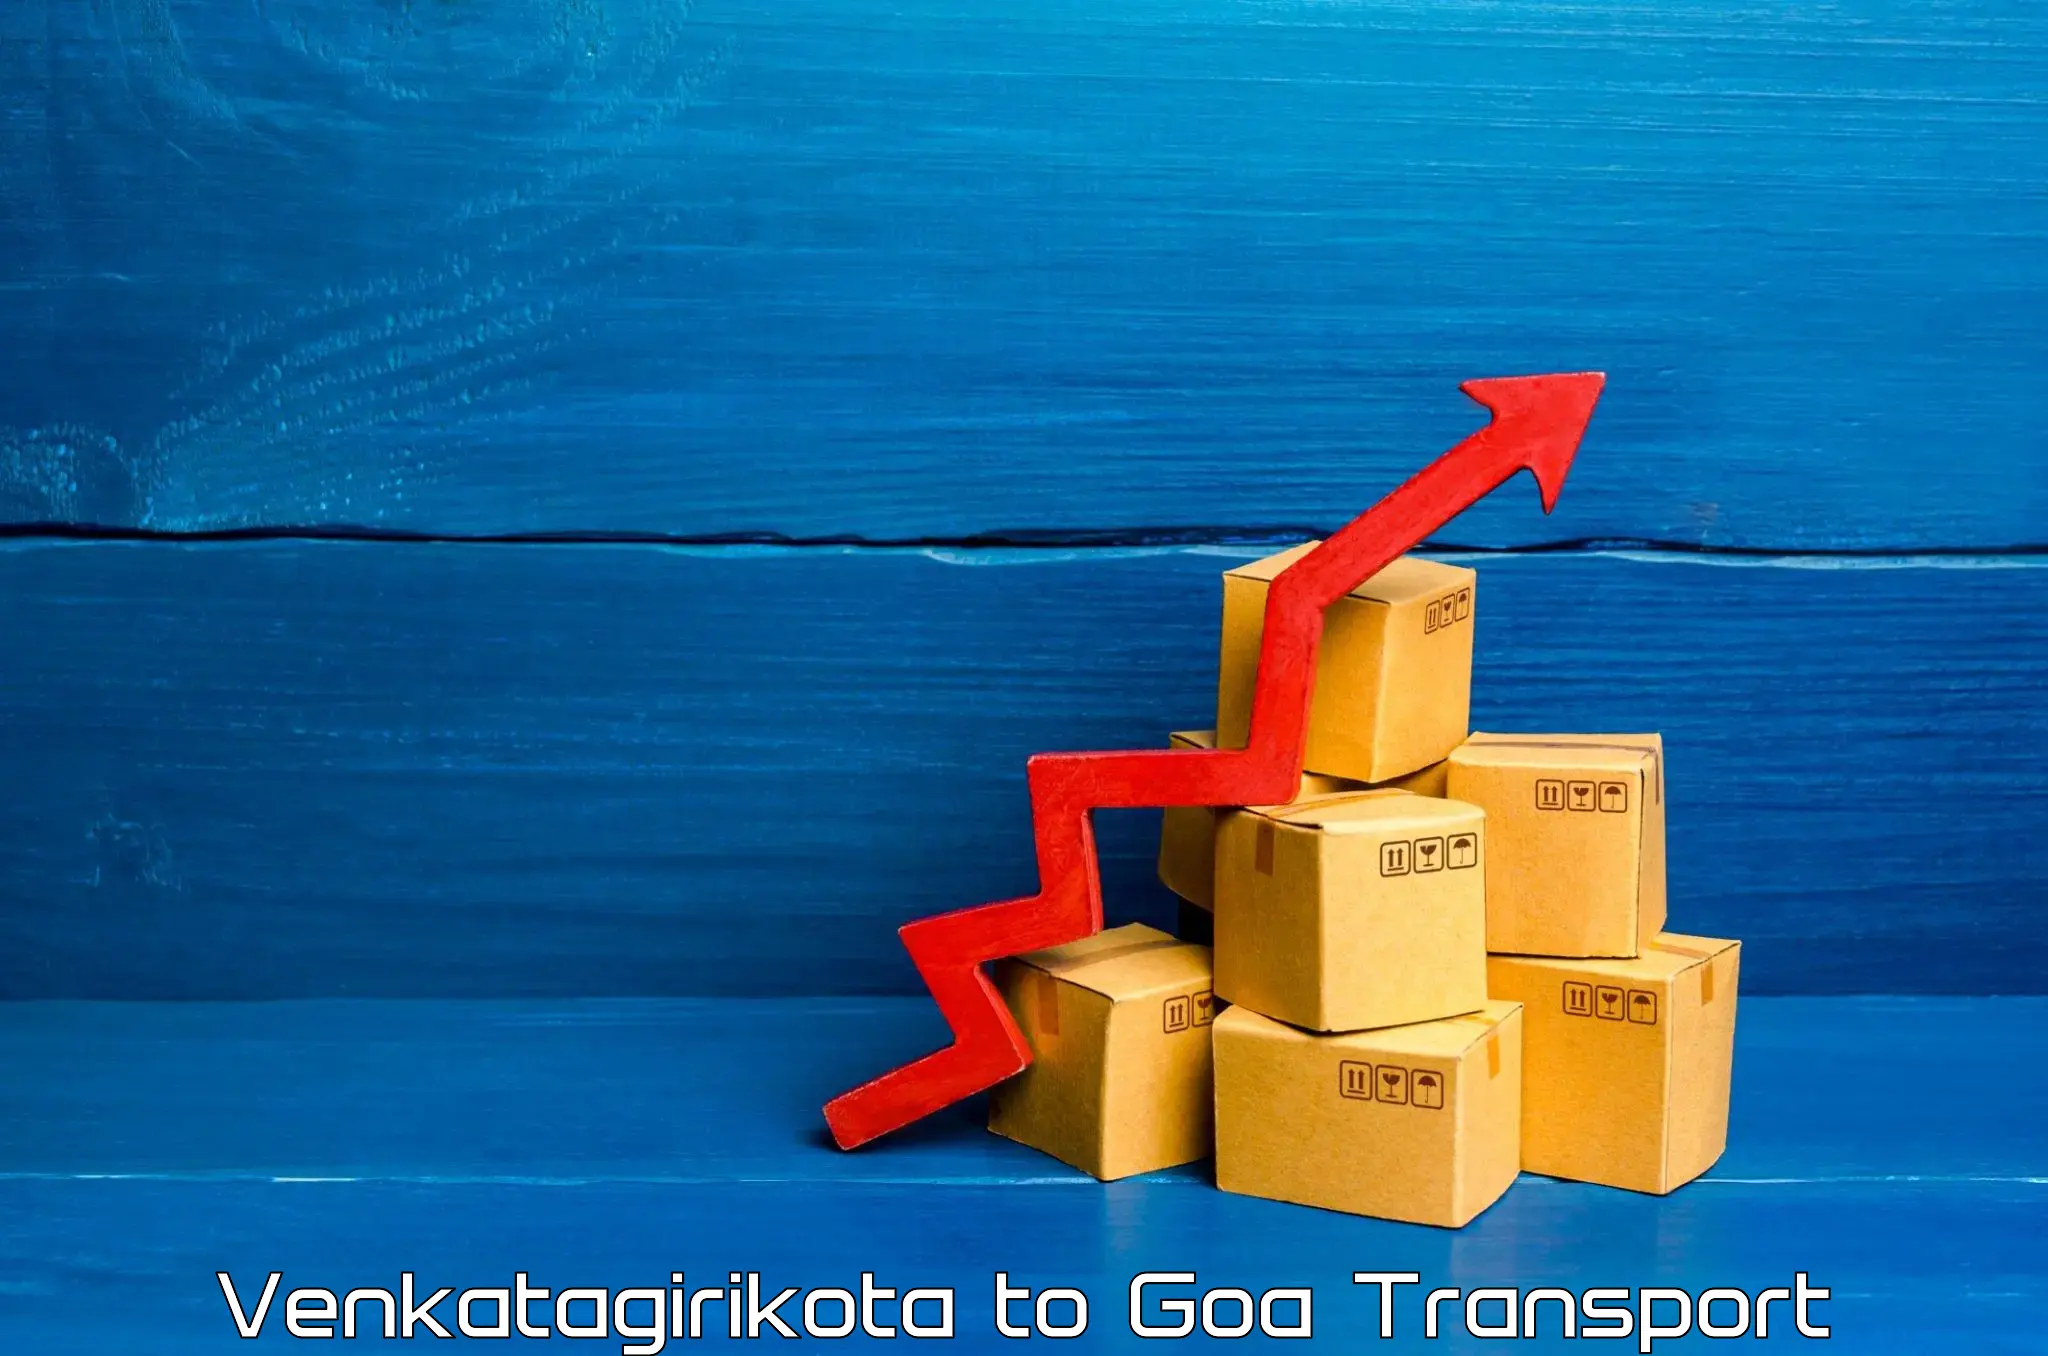 Road transport online services Venkatagirikota to South Goa